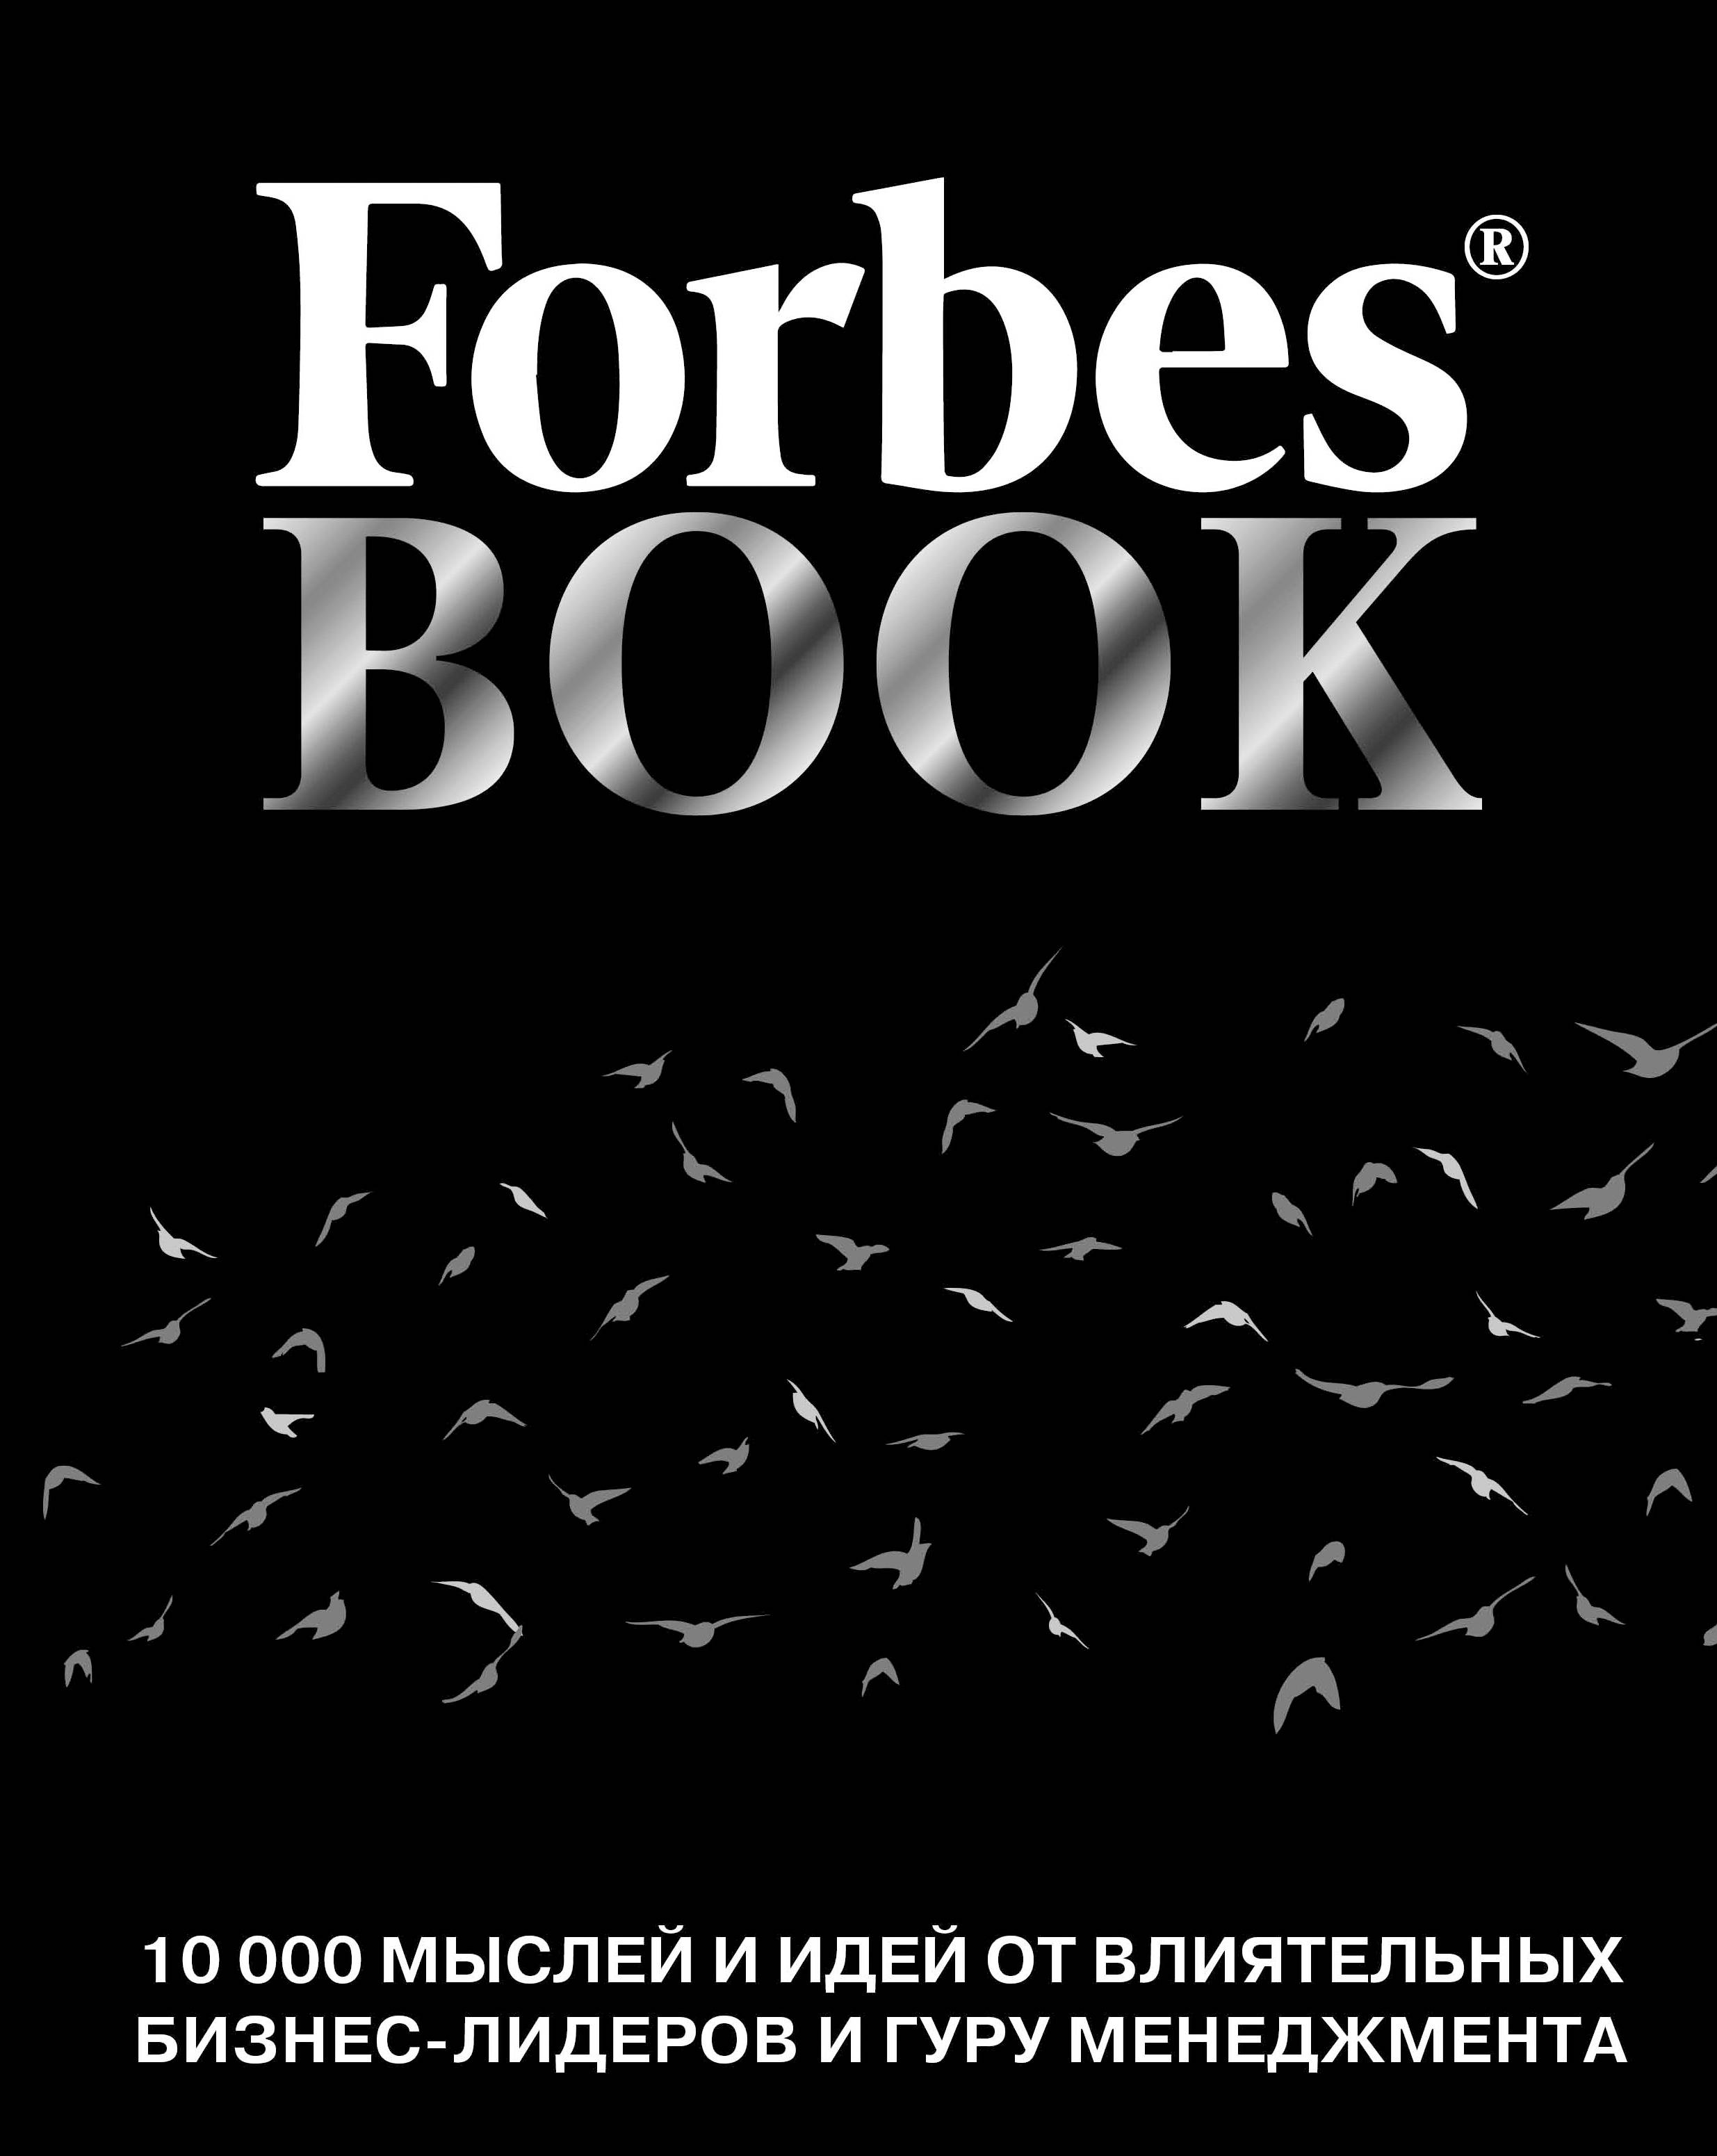 Forbes Book. 10000 мыслей и идей от влиятельных бизнес-лидеров и гуру менеджмента. Тед Гудман